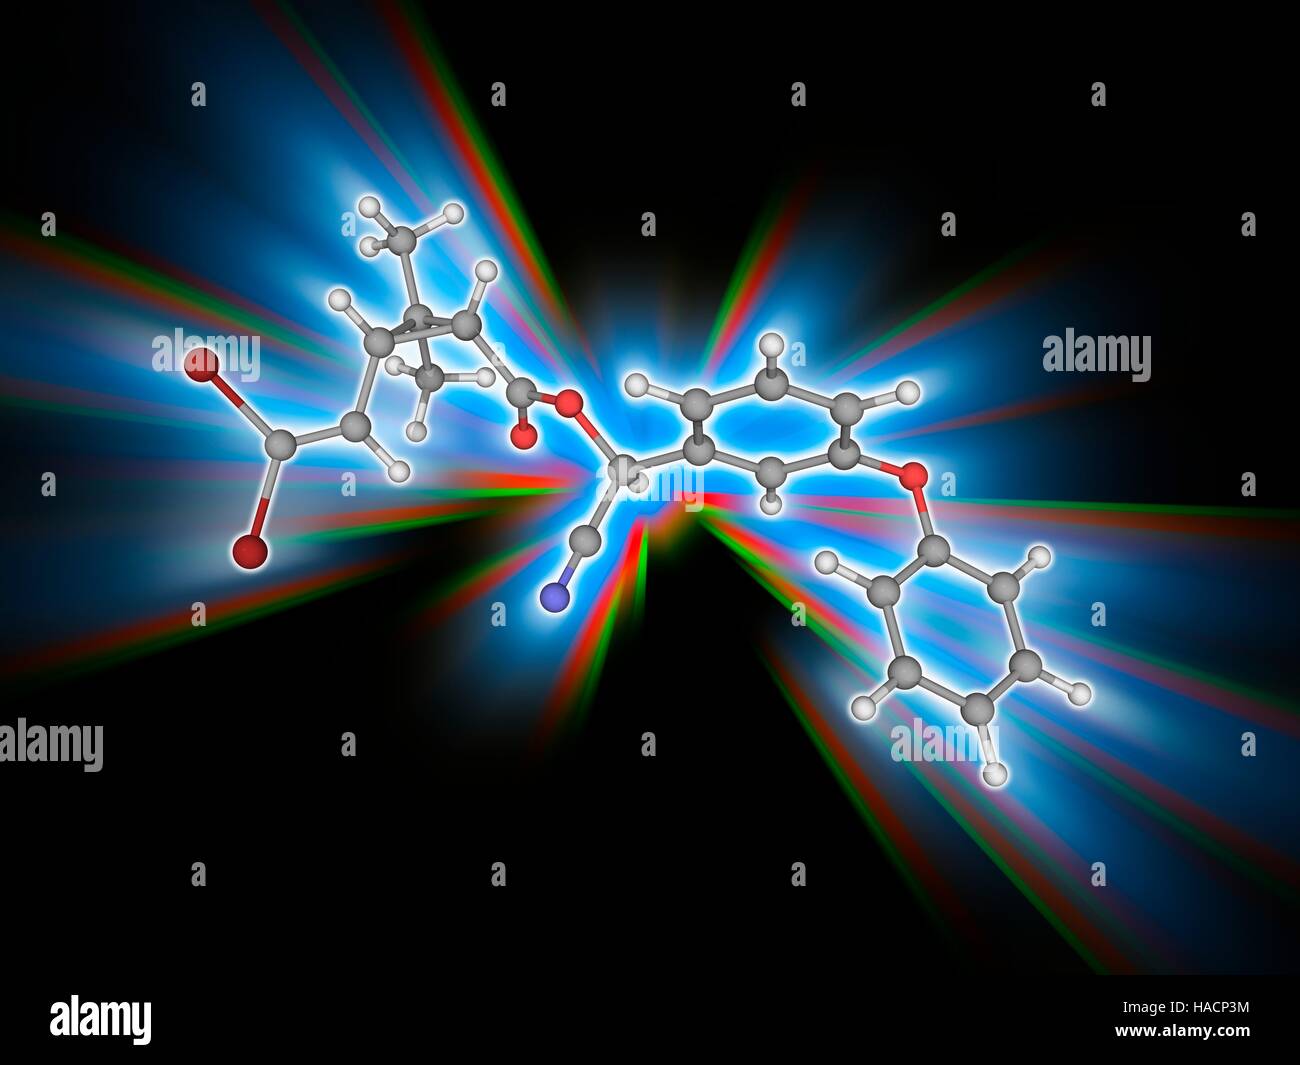 Deltamethrin. Molekulares Modell des Insektizid Deltamethrin (C22. H19. Br2.N.O3). Dies ist eine beliebte und weit verbreitete Pyrethroid Ester Insektizid. Atome als Kugeln dargestellt werden und sind farblich gekennzeichnet: Kohlenstoff (grau), Wasserstoff (weiß), Stickstoff (blau), Sauerstoff (rot) und Brom (braun). Abbildung. Stockfoto